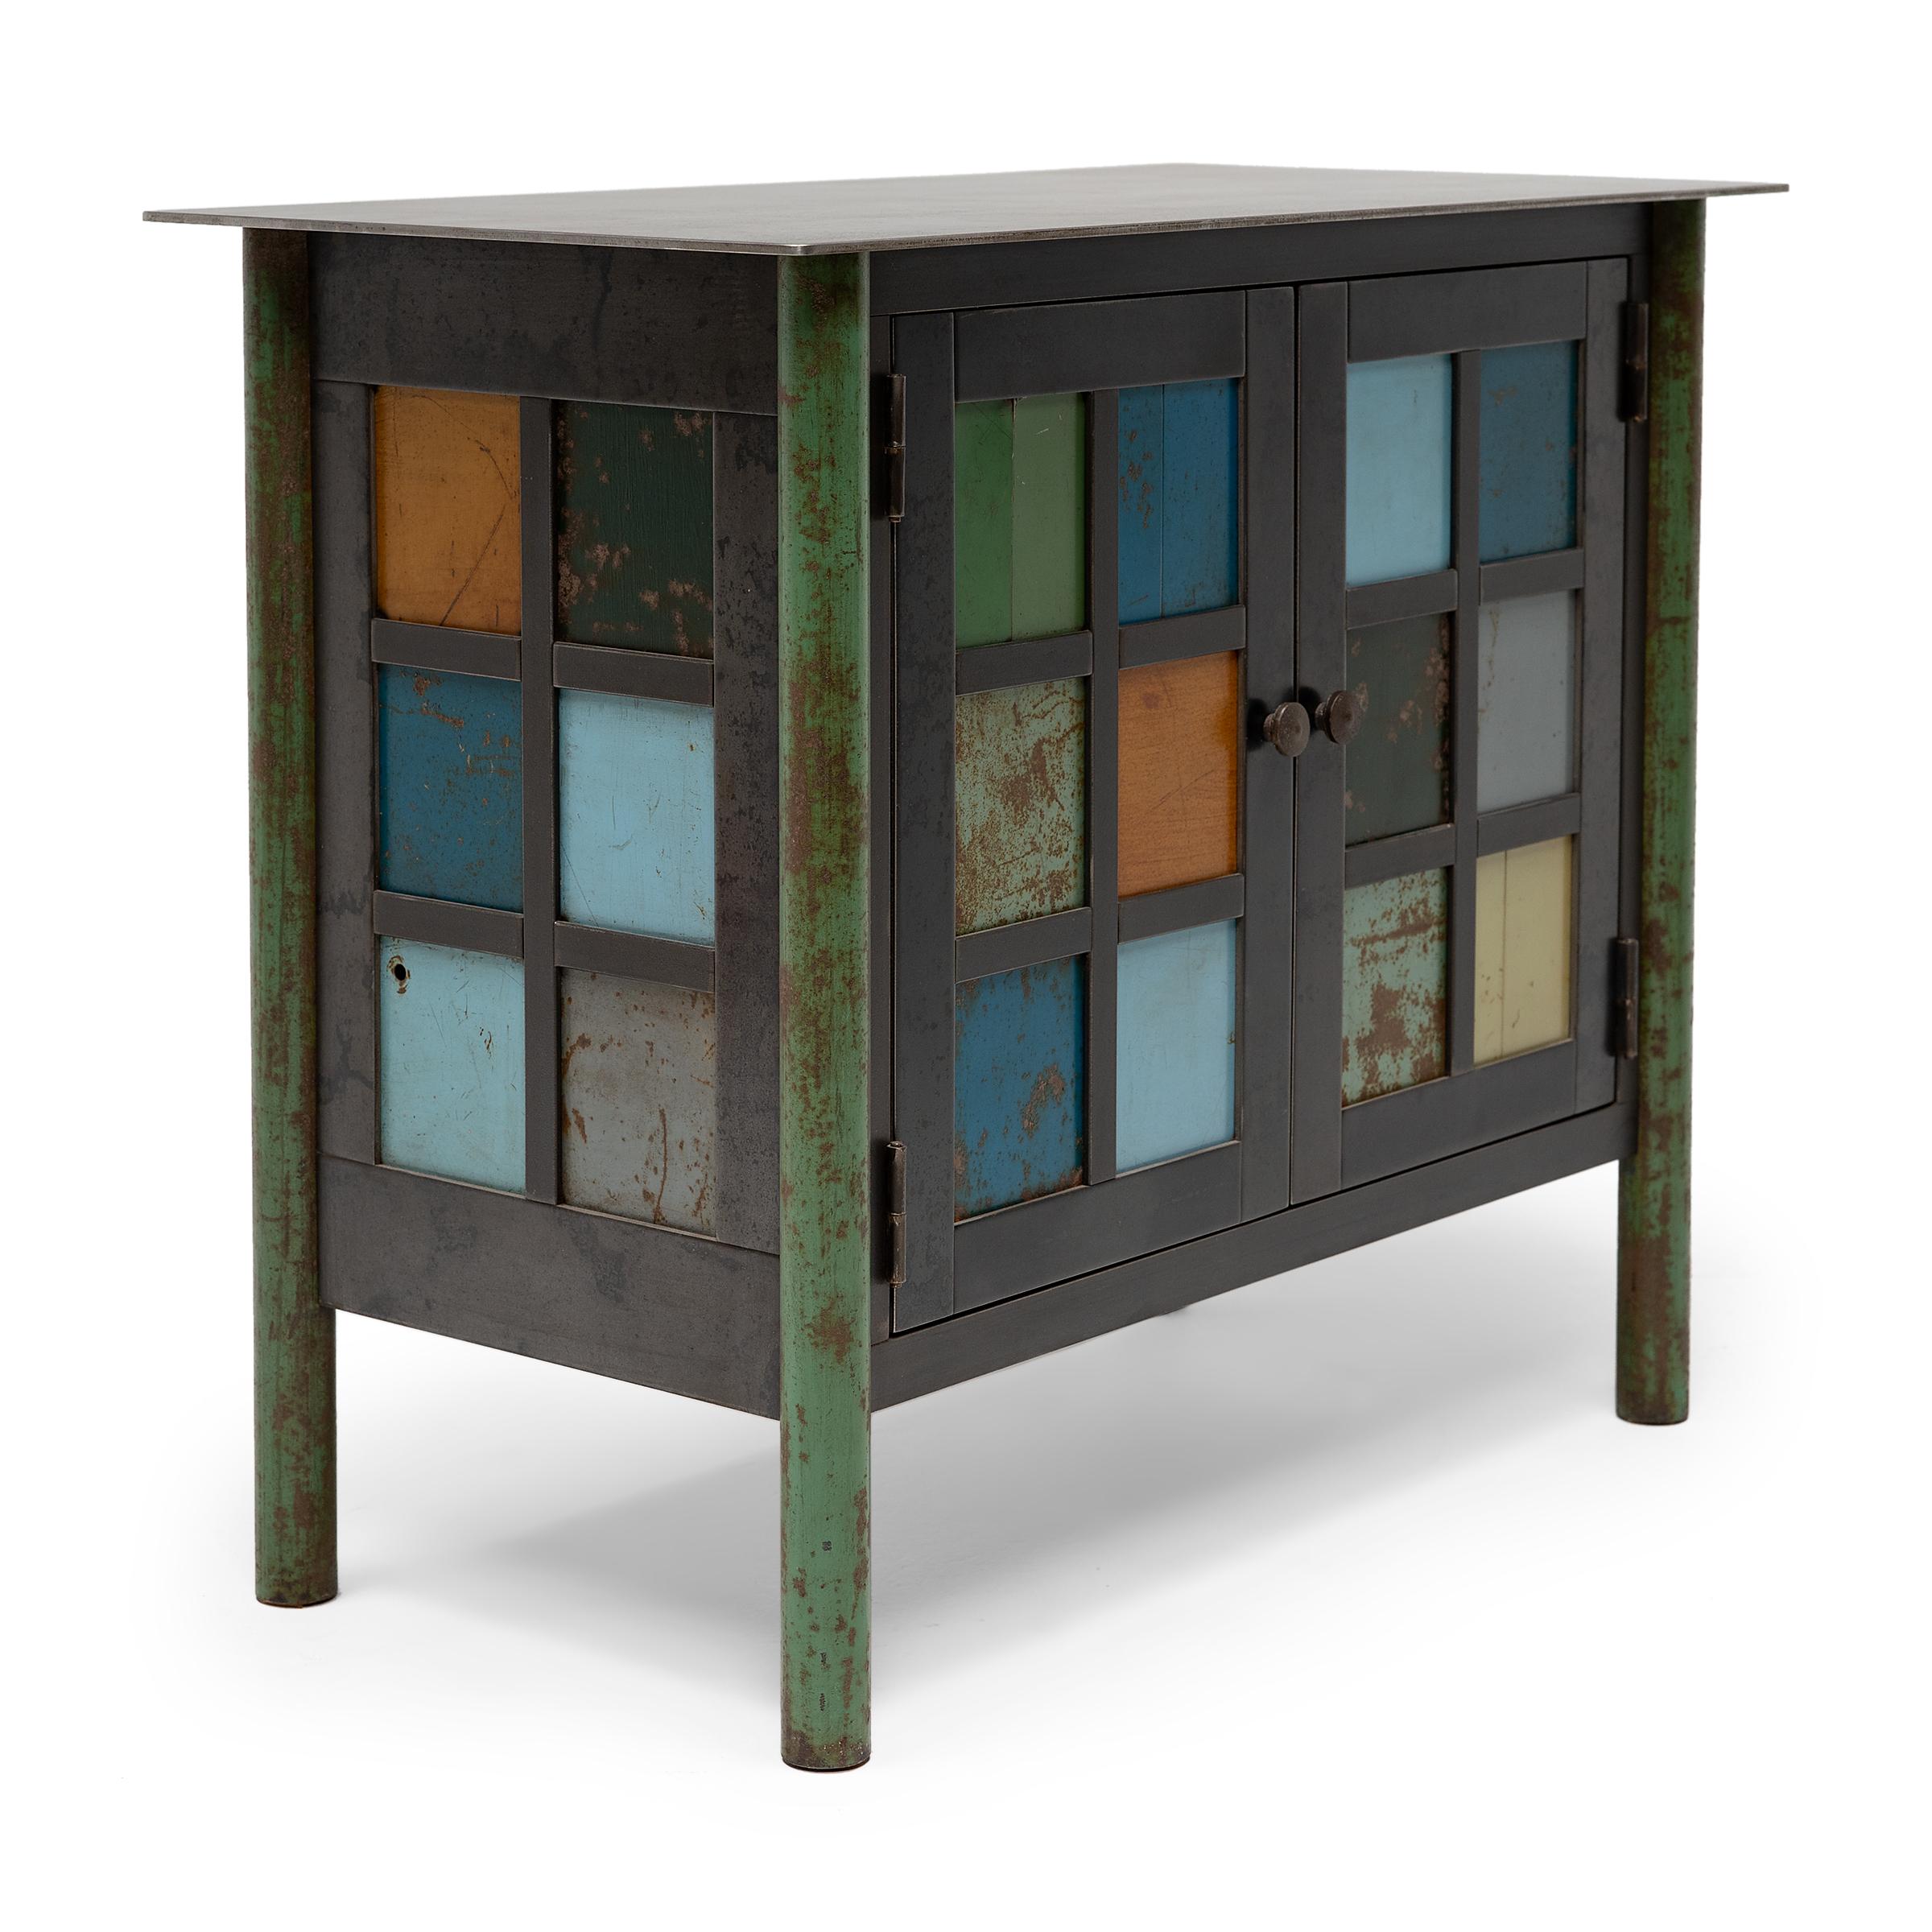 Ce meuble d'appoint en acier créé par l'artiste Jim Steele incarne le chic industriel avec une simplicité intemporelle et une touche artisanale. Inspiré par le minimalisme Shaker, le coffre est fabriqué à partir d'acier trouvé avec un cadre en acier